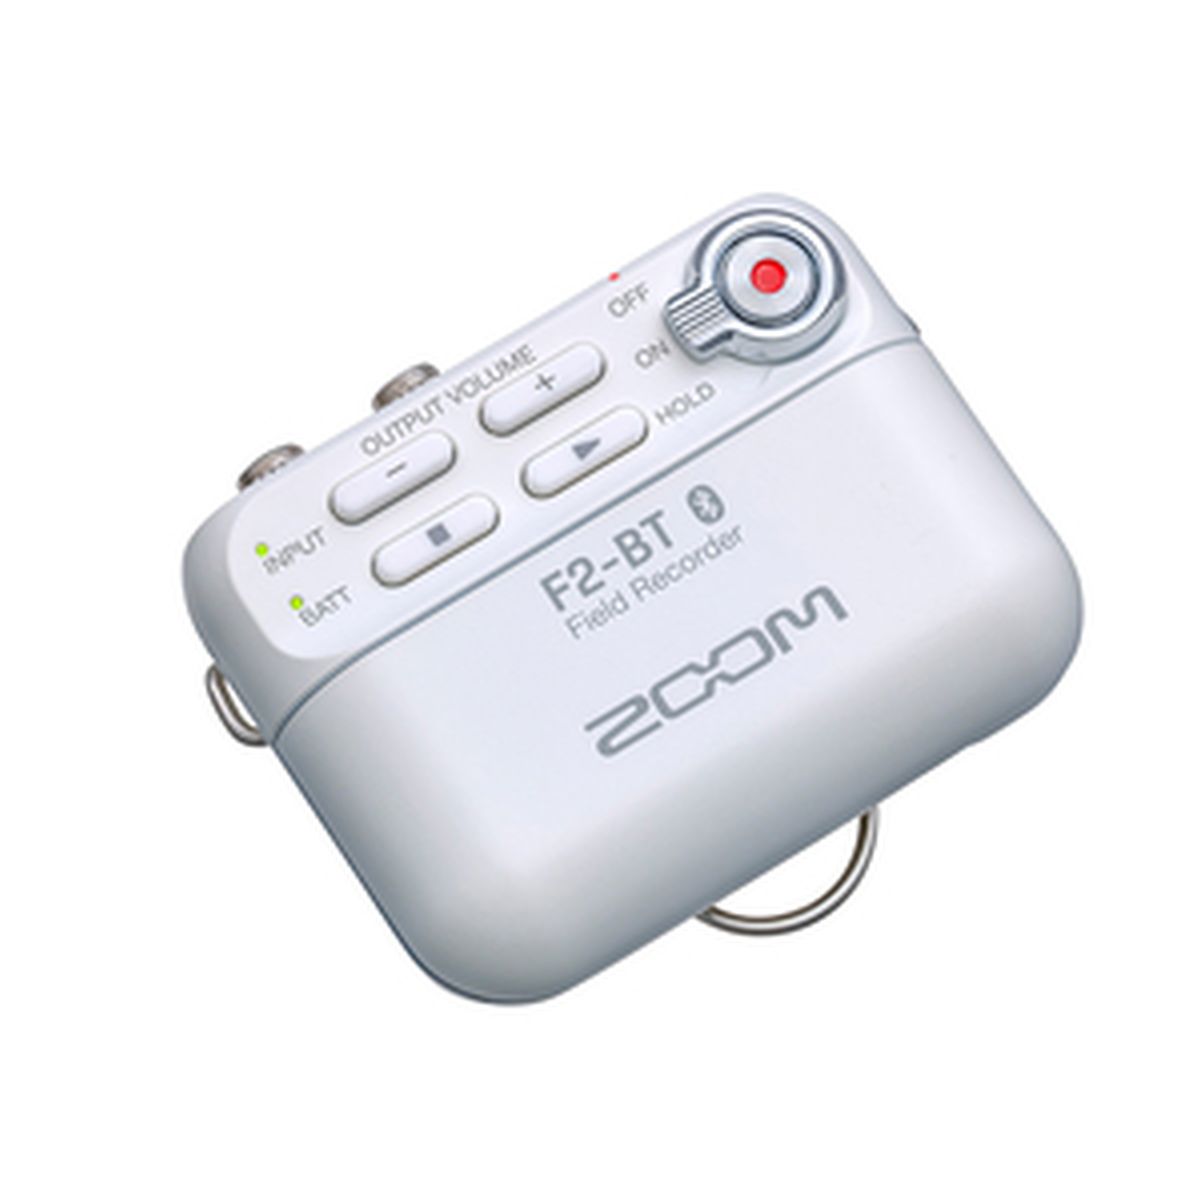 Zoom F2-BT White Field Recorder Bluetooth und Lavalier Mikrofon